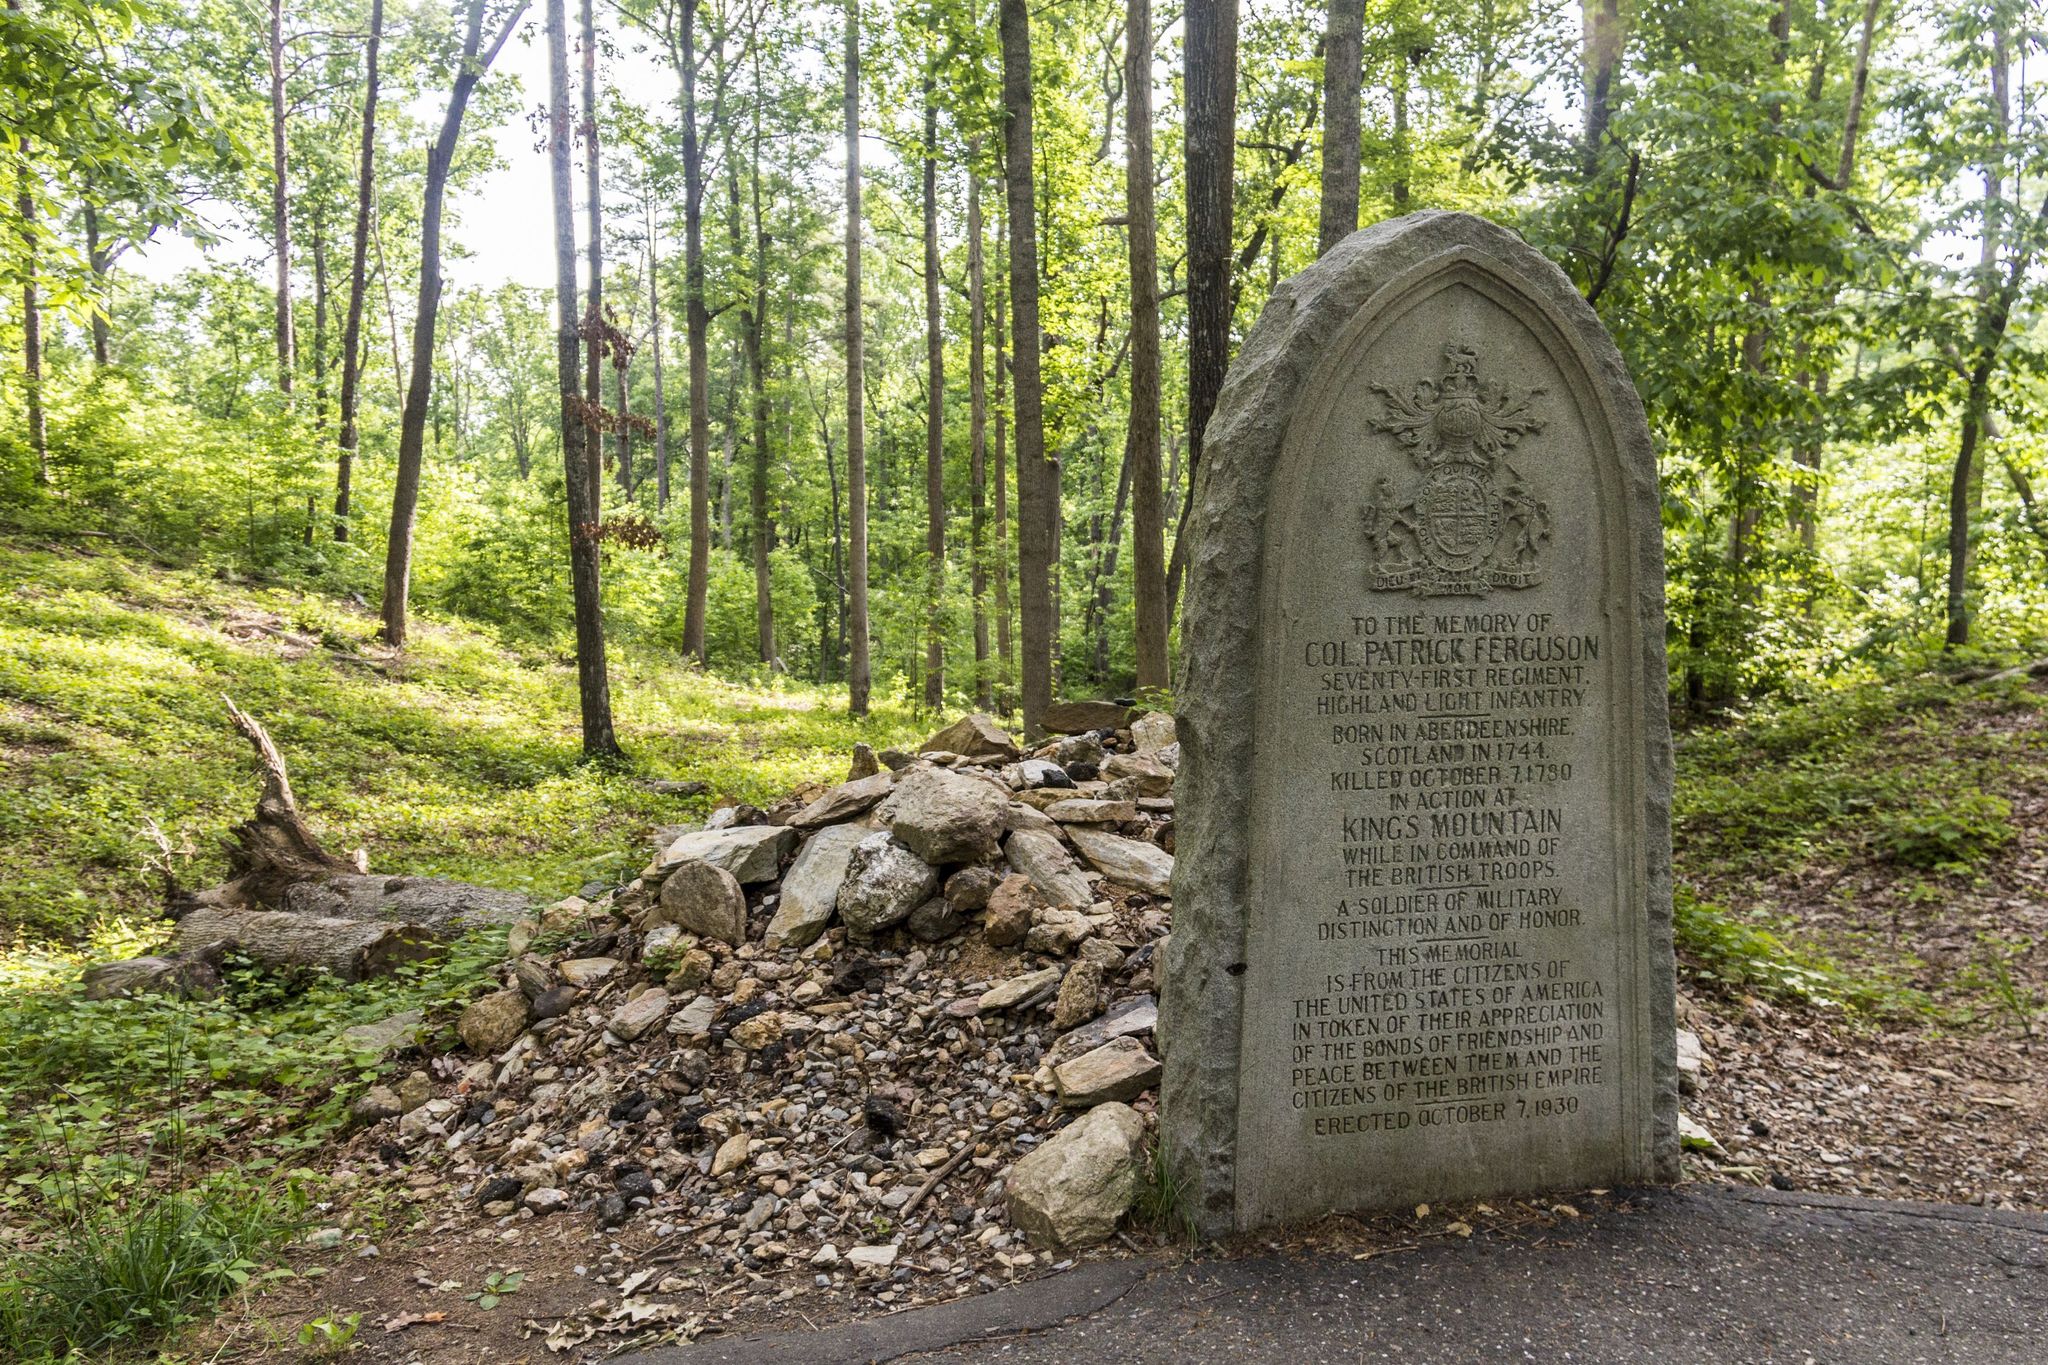 Major Patrick Ferguson's Grave